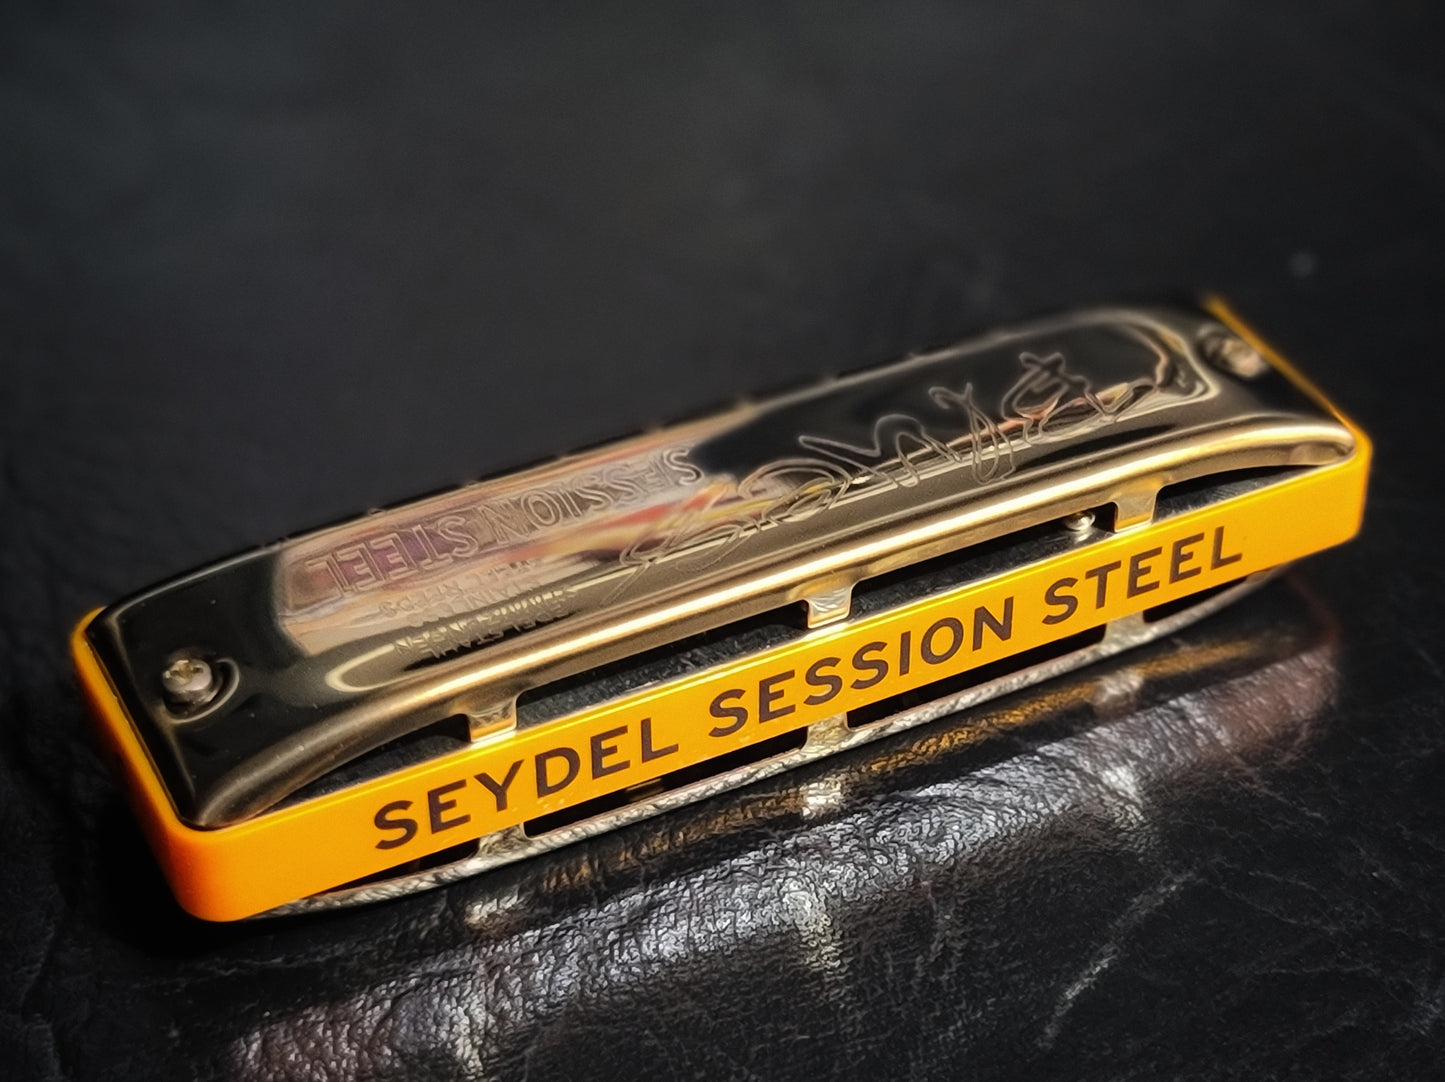 Seydel Session Steel Antiqued